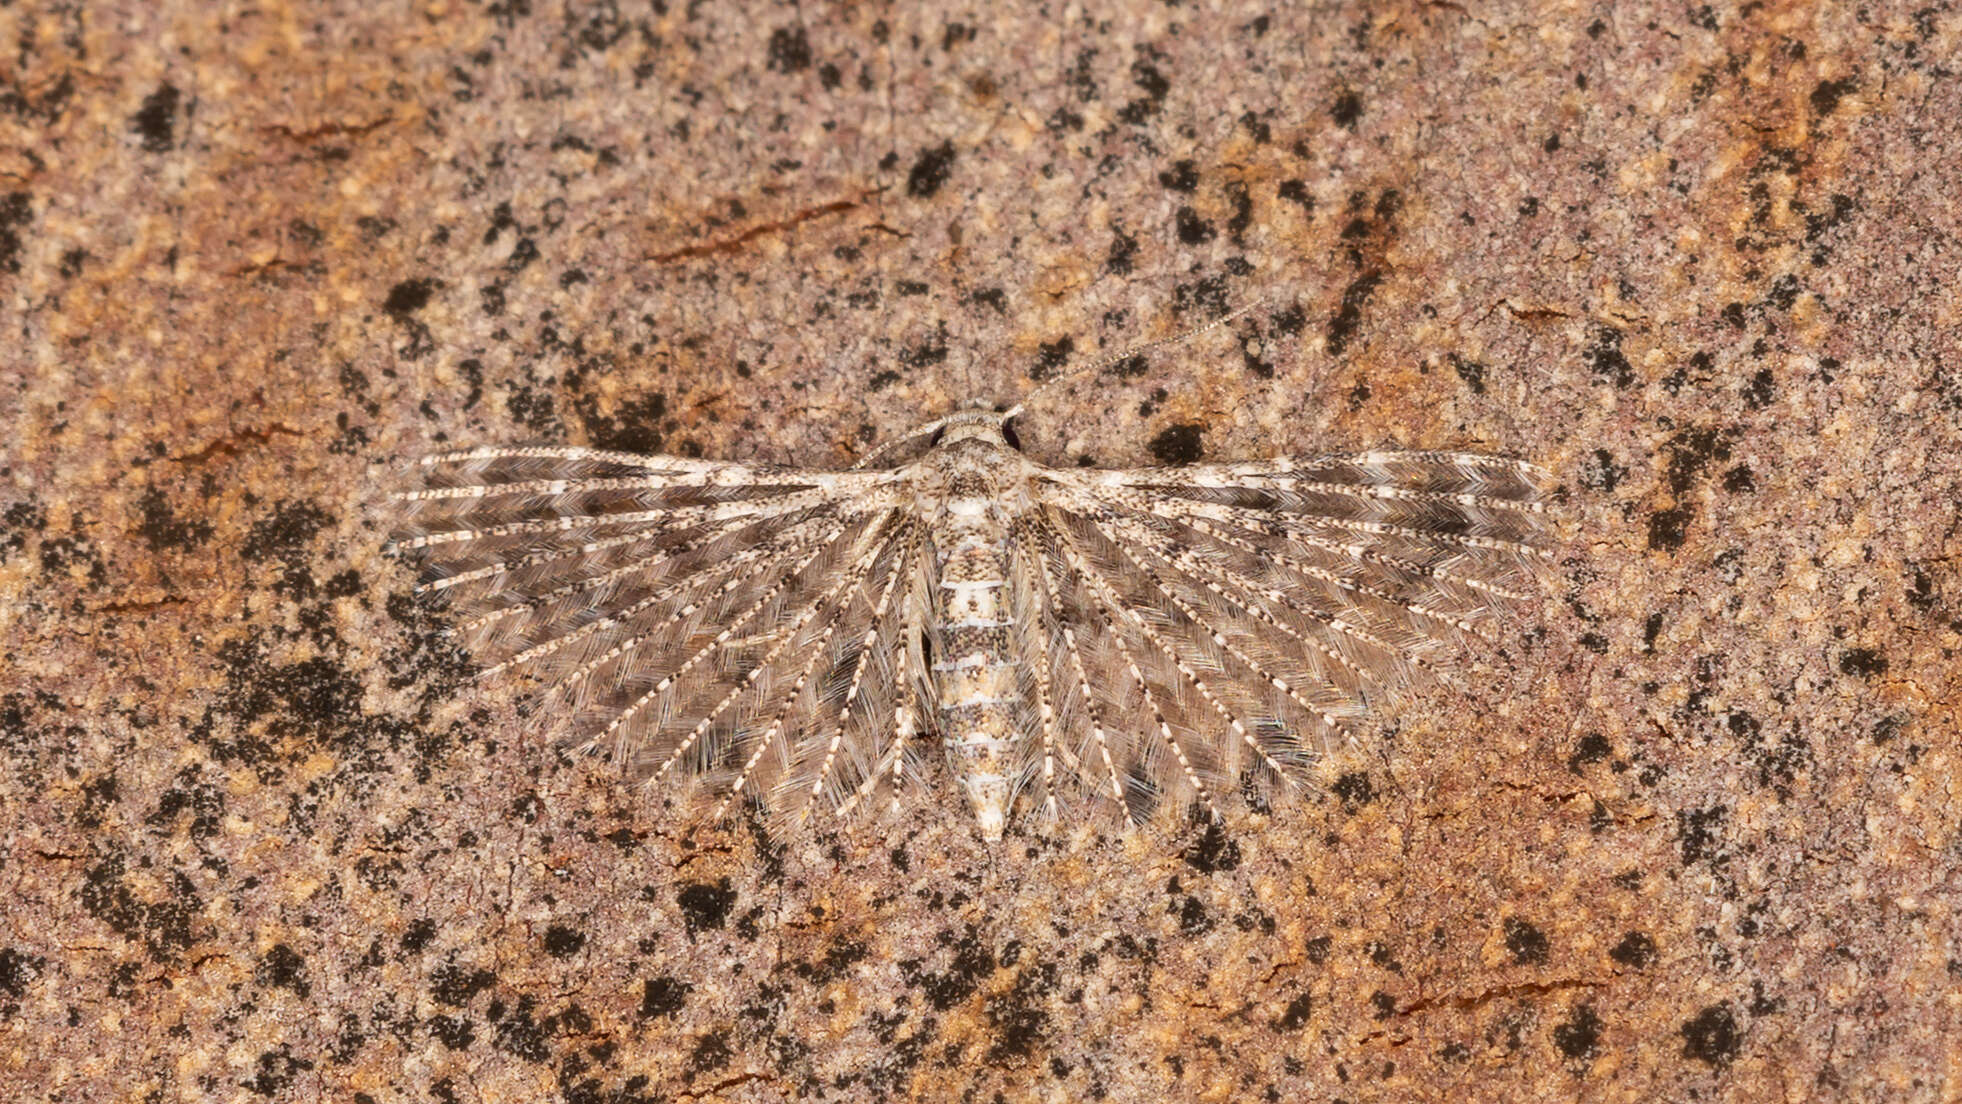 Image of Alucita pygmaea Meyrick 1890